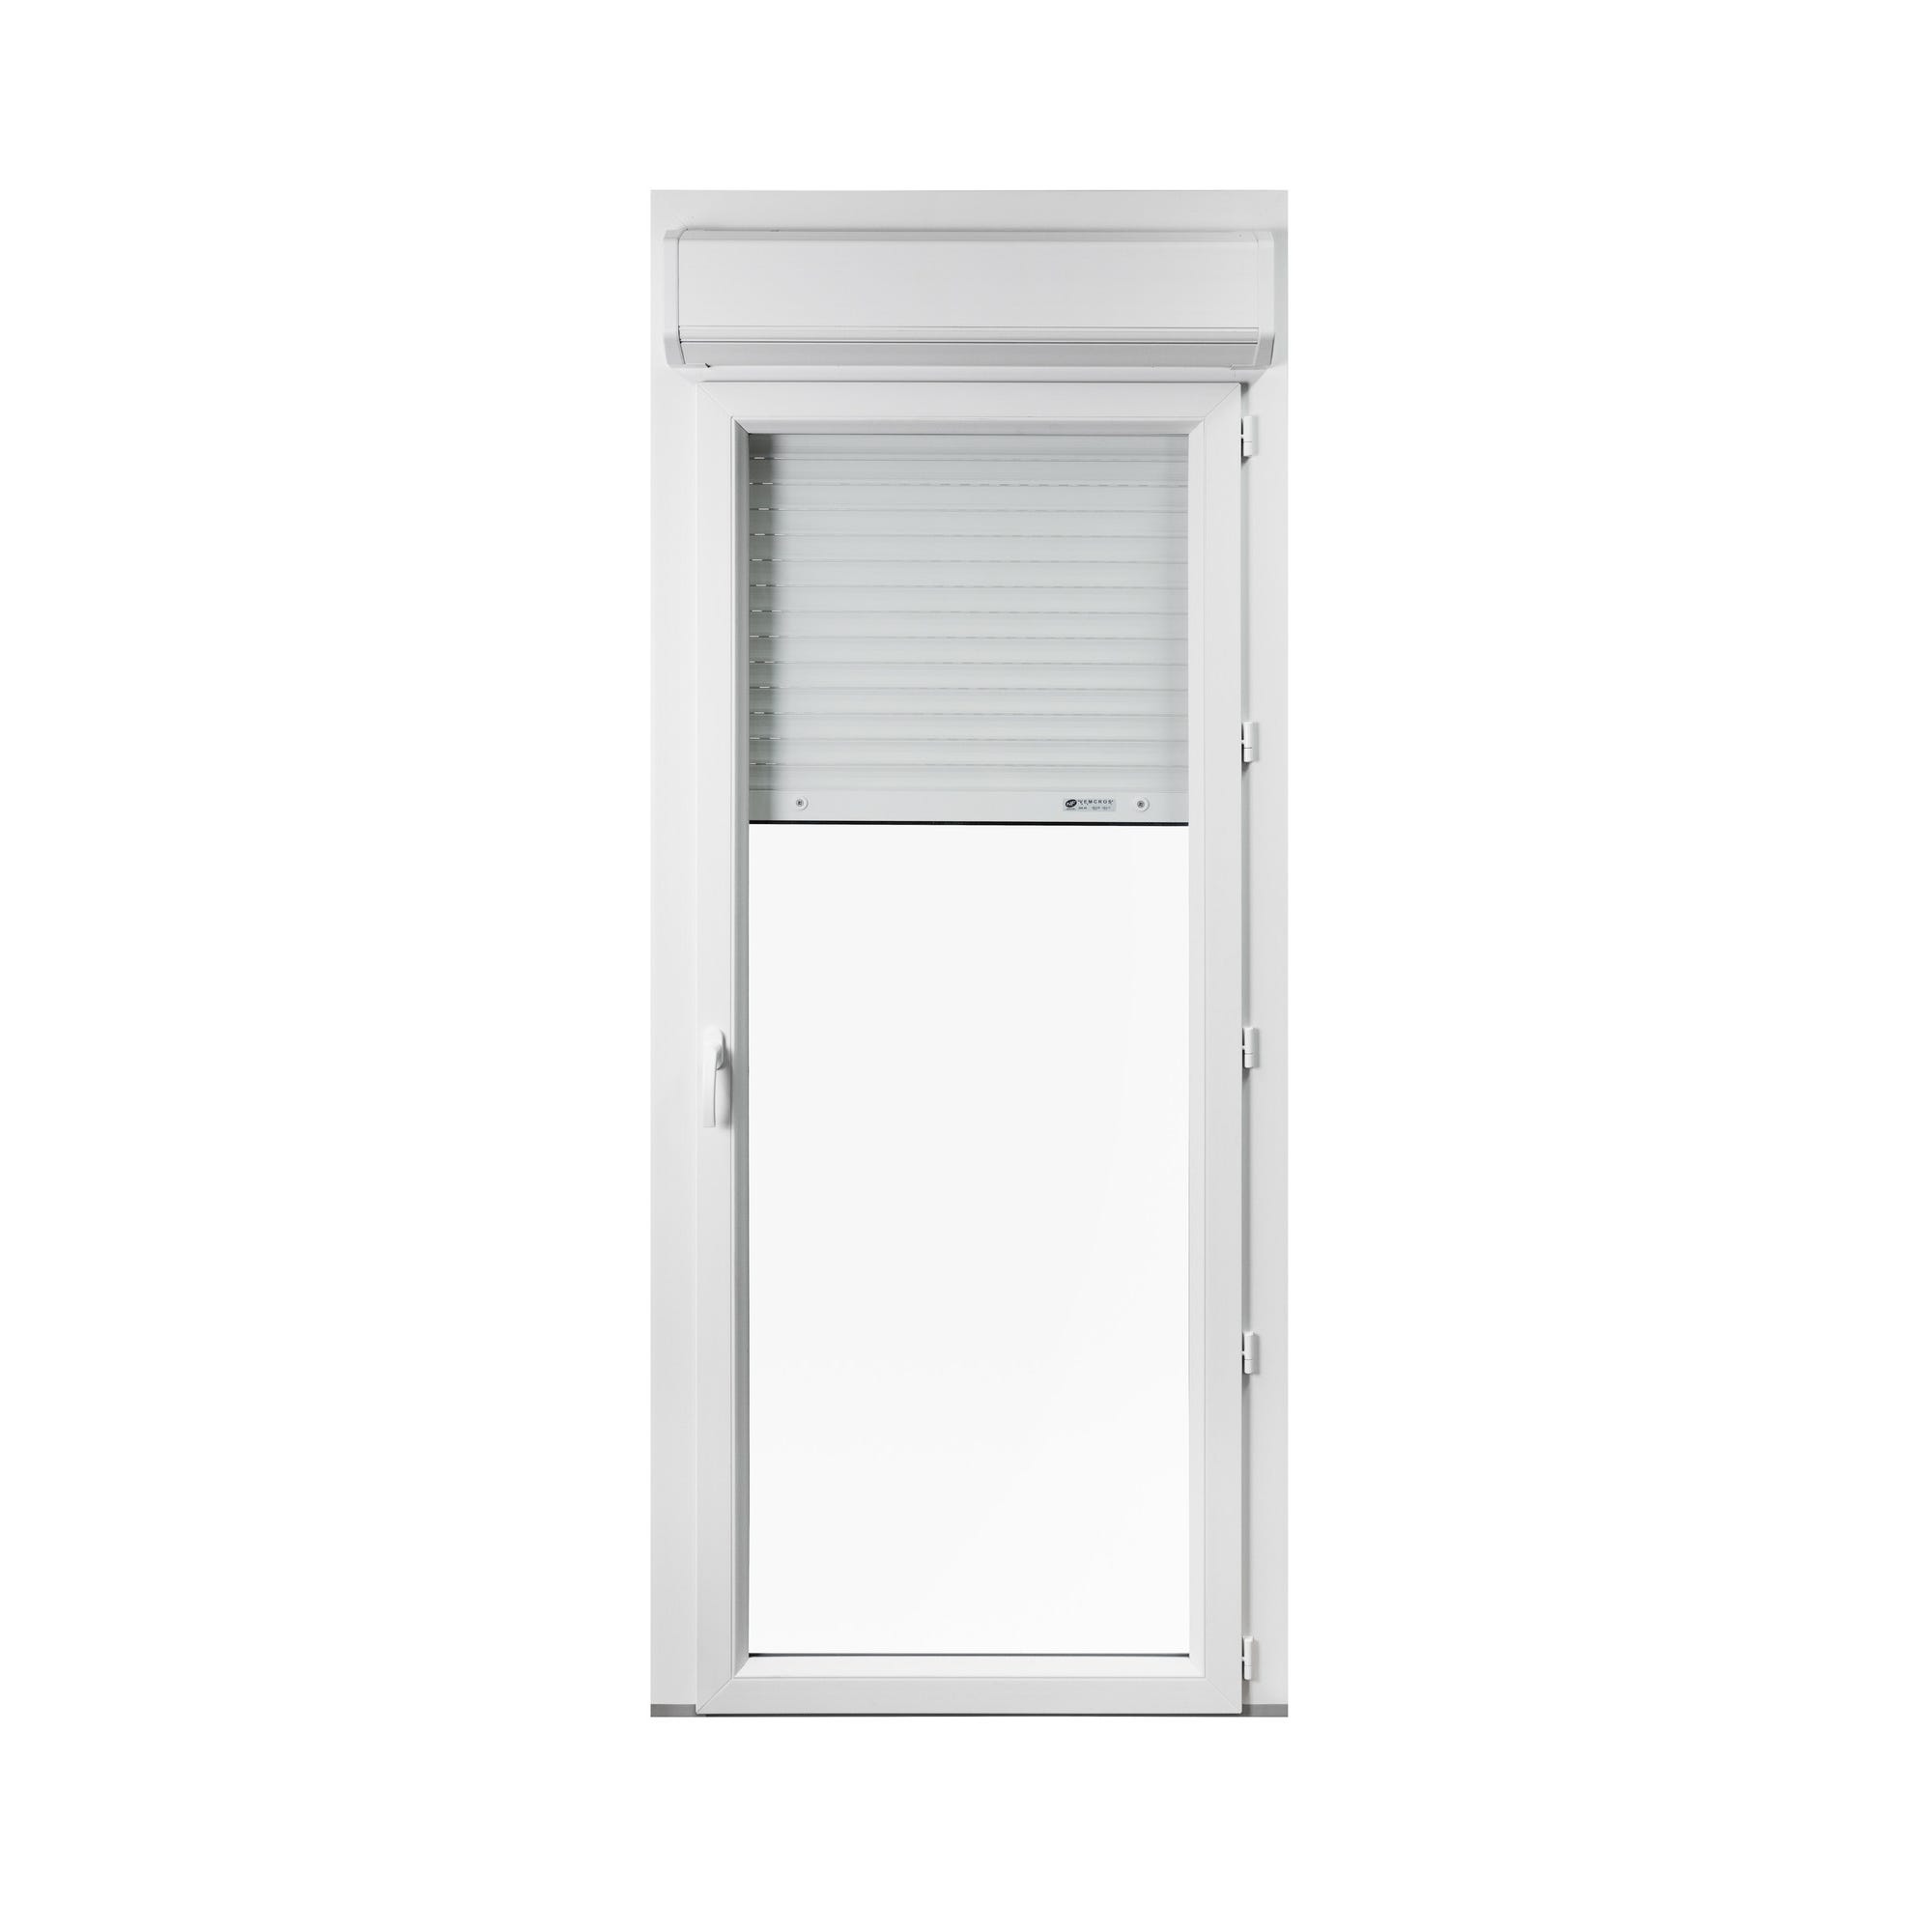 Porte-fenêtre PVC avec volet roulant intégré monobloc Of D 1 vantail H.205 x L.80 cm - GROSFILLEX 0